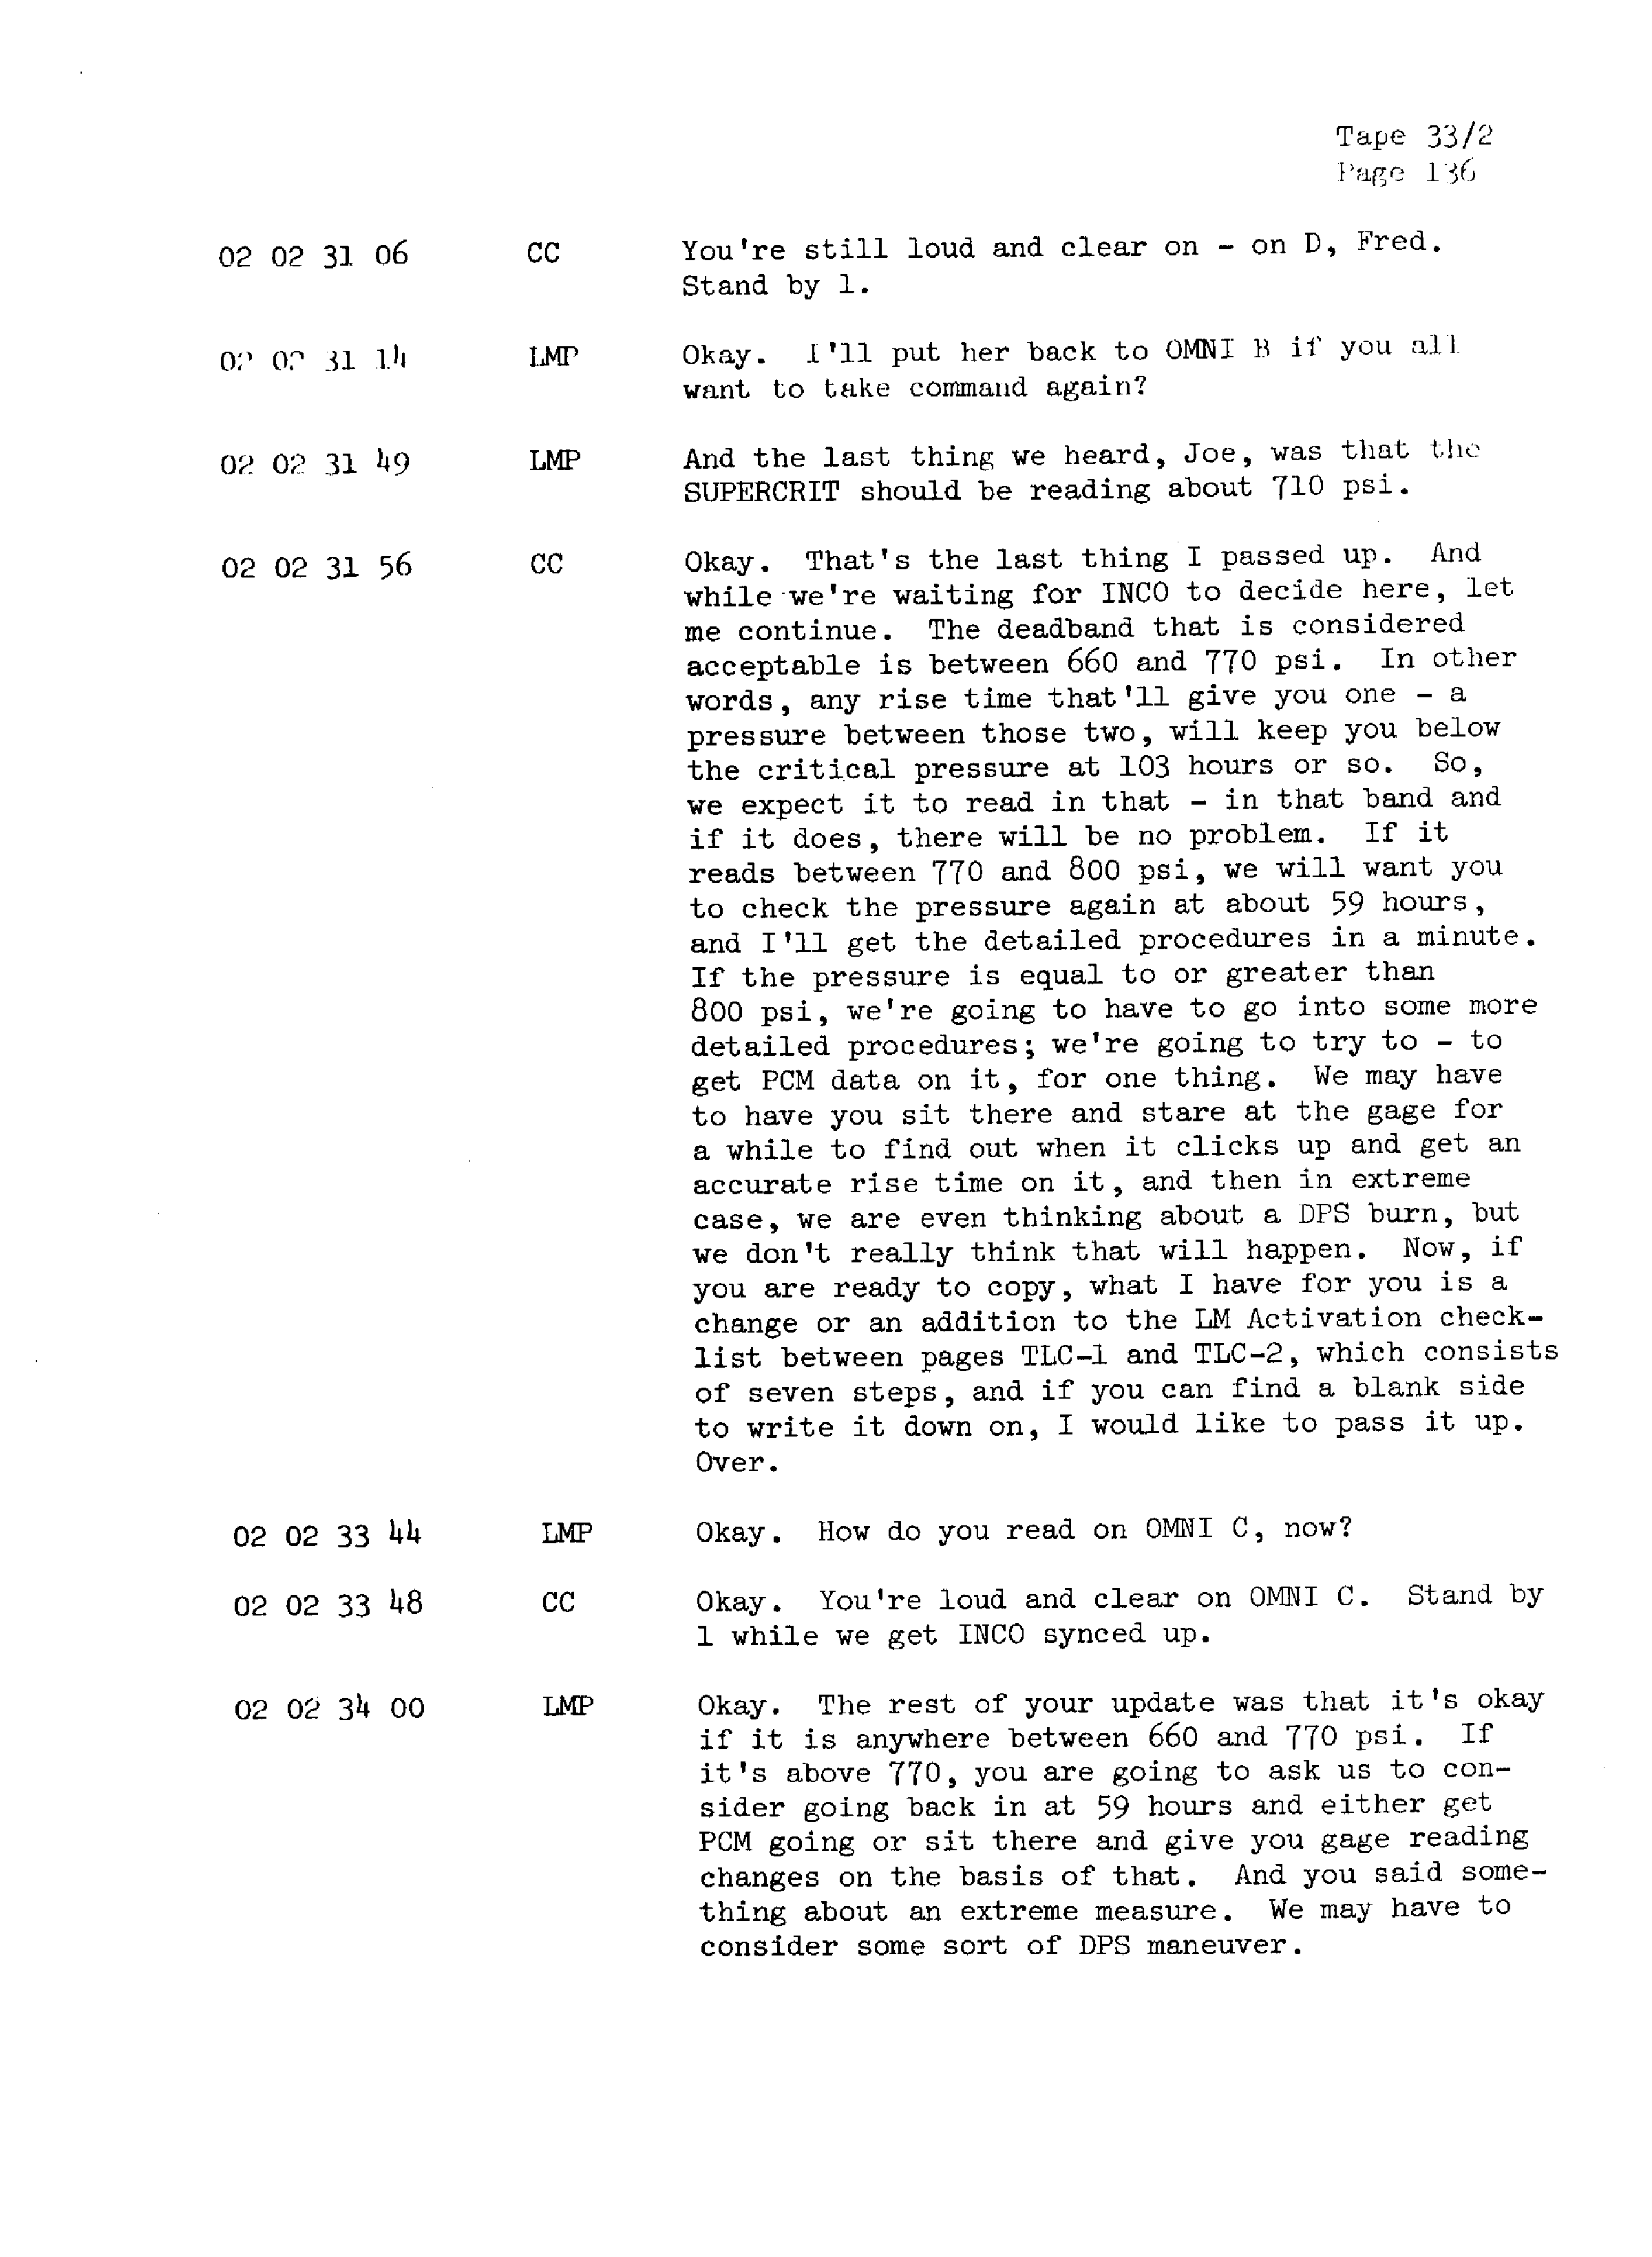 Page 143 of Apollo 13’s original transcript